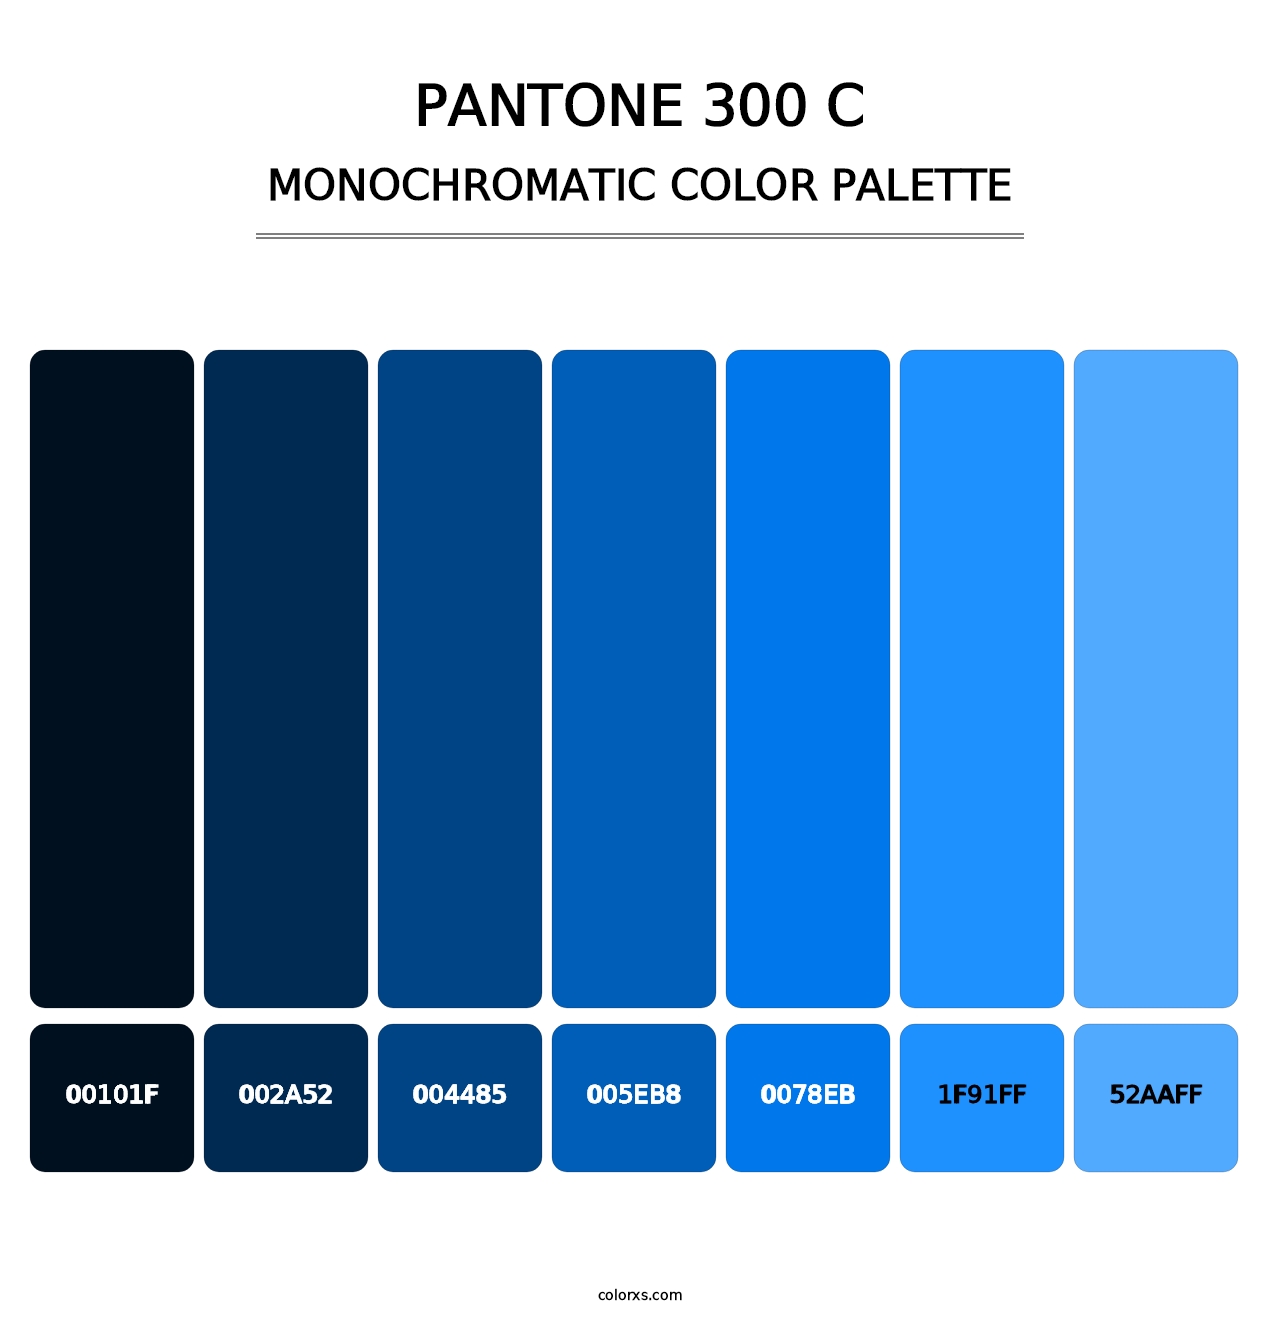 PANTONE 300 C - Monochromatic Color Palette